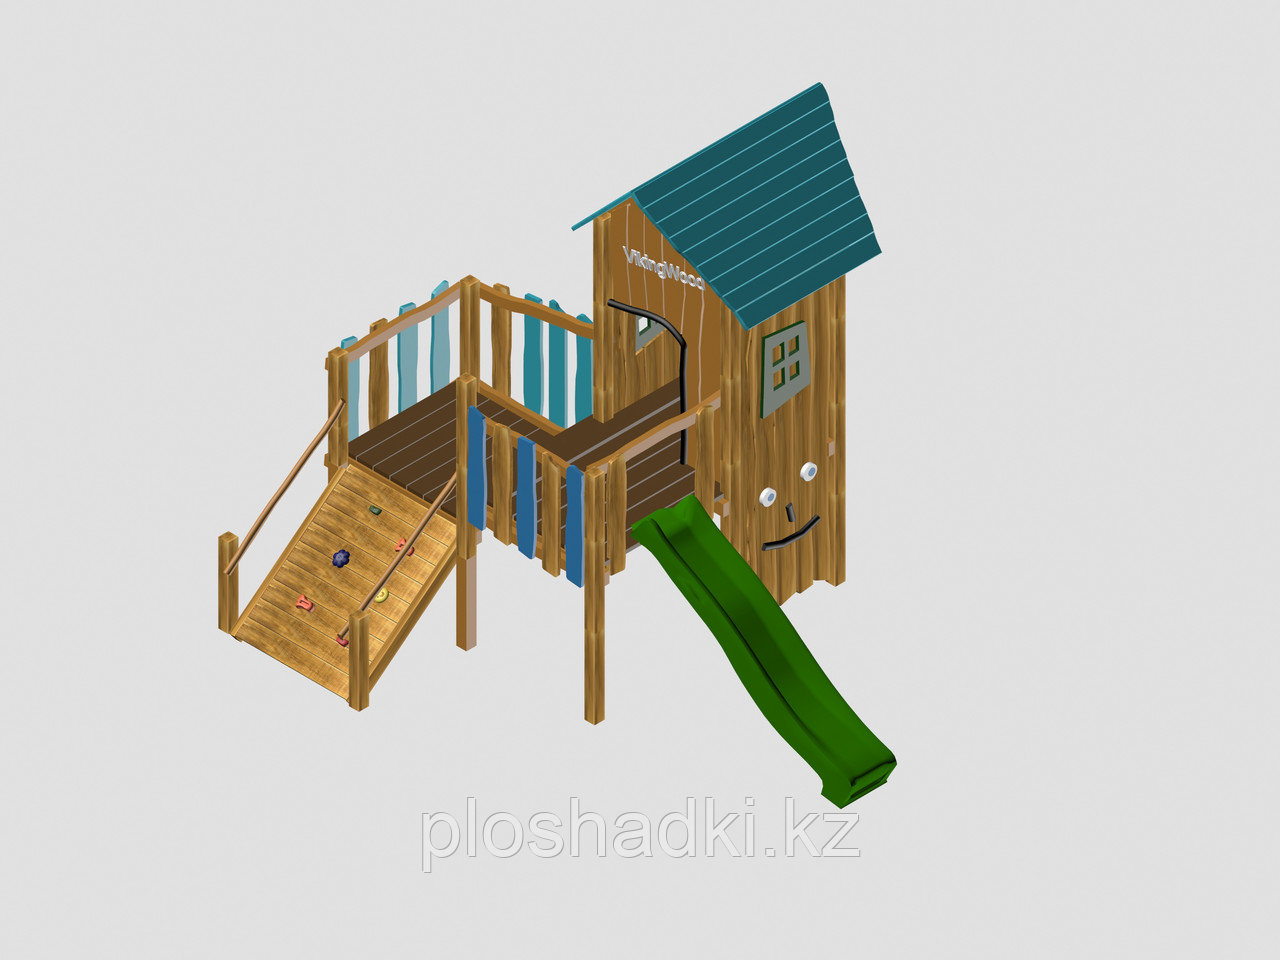 Игровой комплекс "Вилсон", крыша из дерева, лестница-скалодром, домик, горка, скалодром с каменными зацепками, фото 1